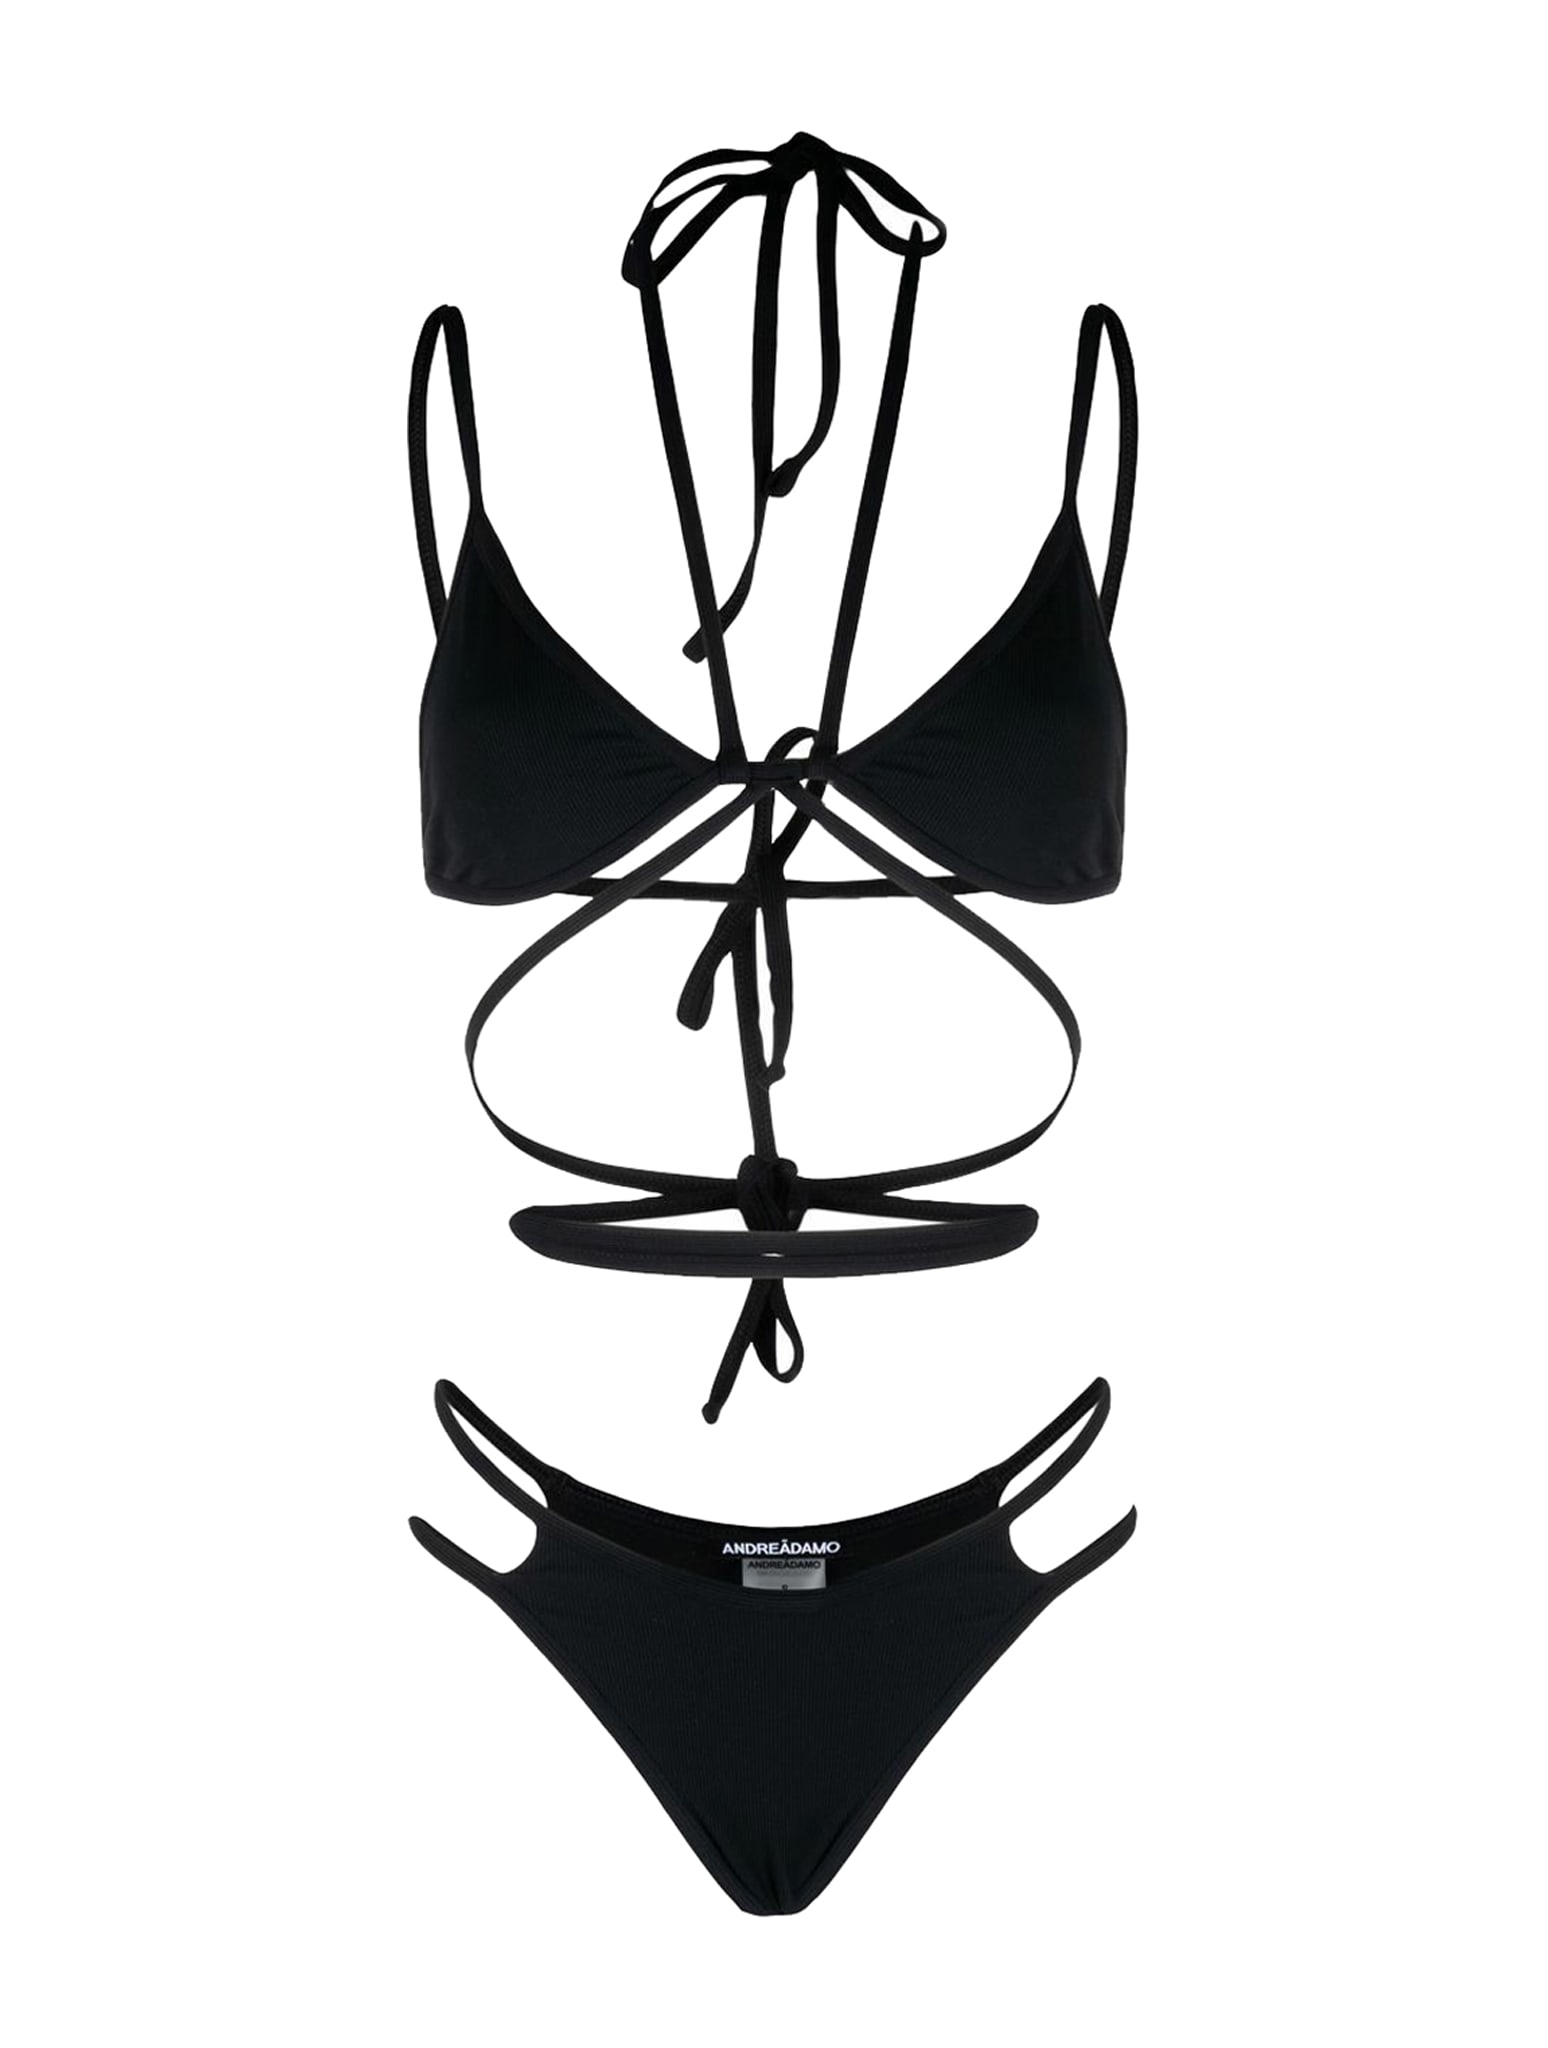 ANDREADAMO Double Bikini With Straps And Belt In Ri